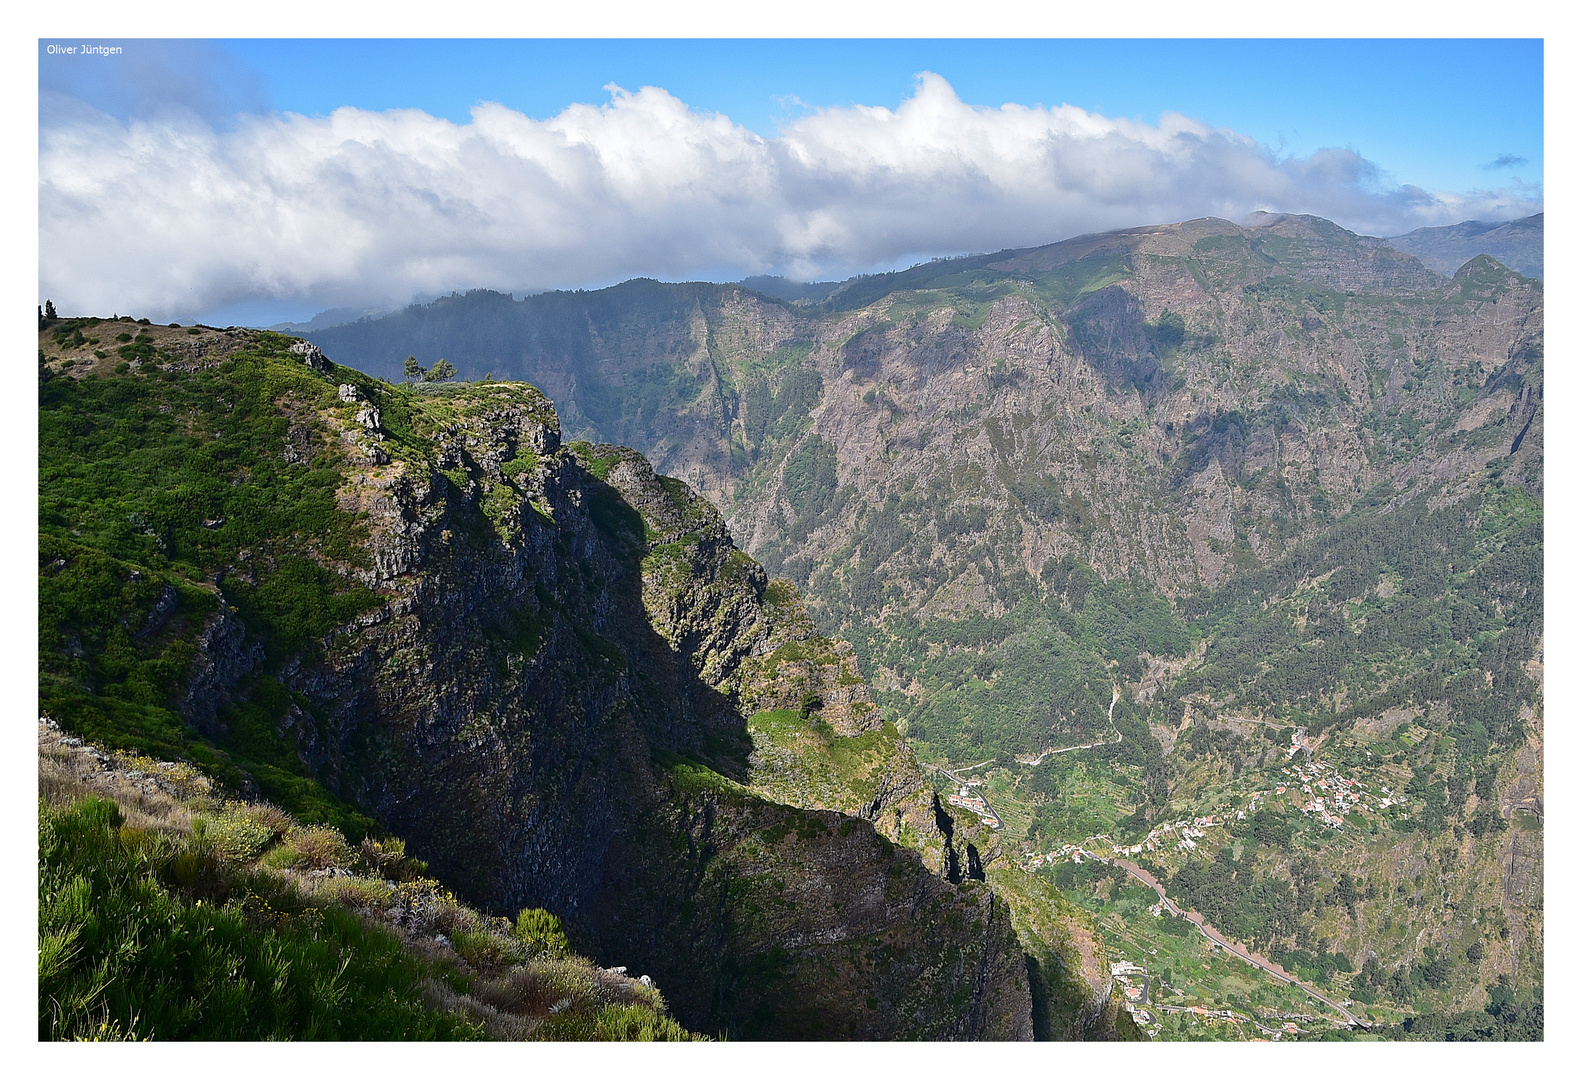 Curral das Freiras - Das Nonnental / Madeira